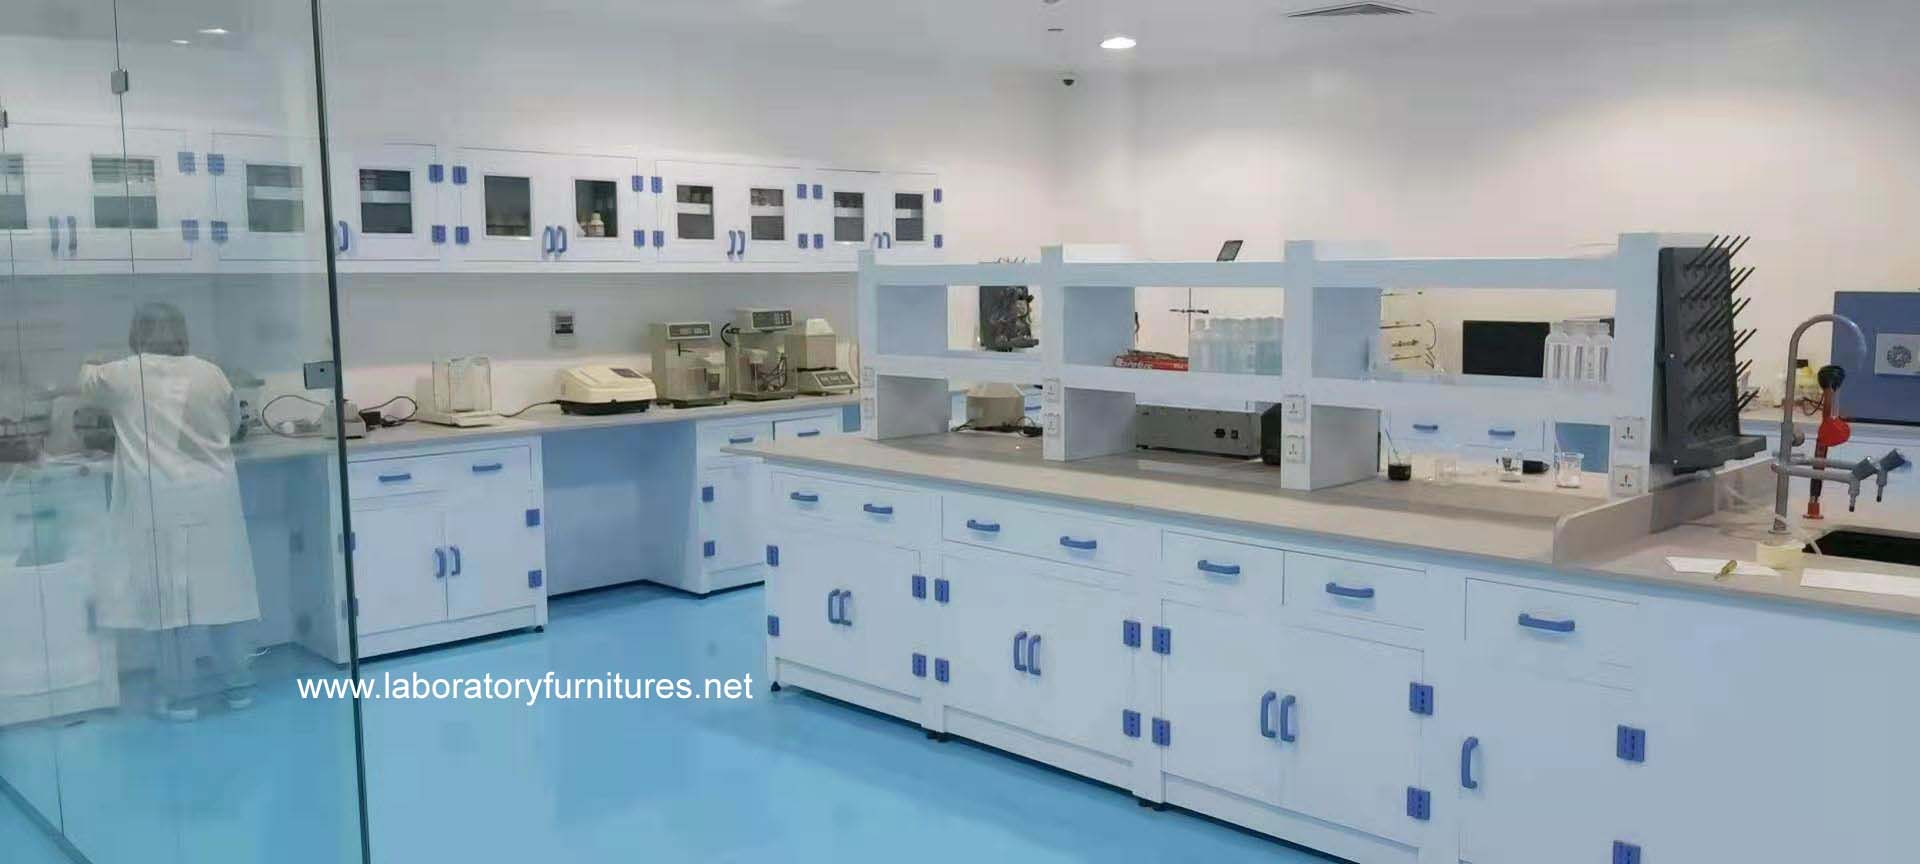 Polypropylene(PP) lab furniture